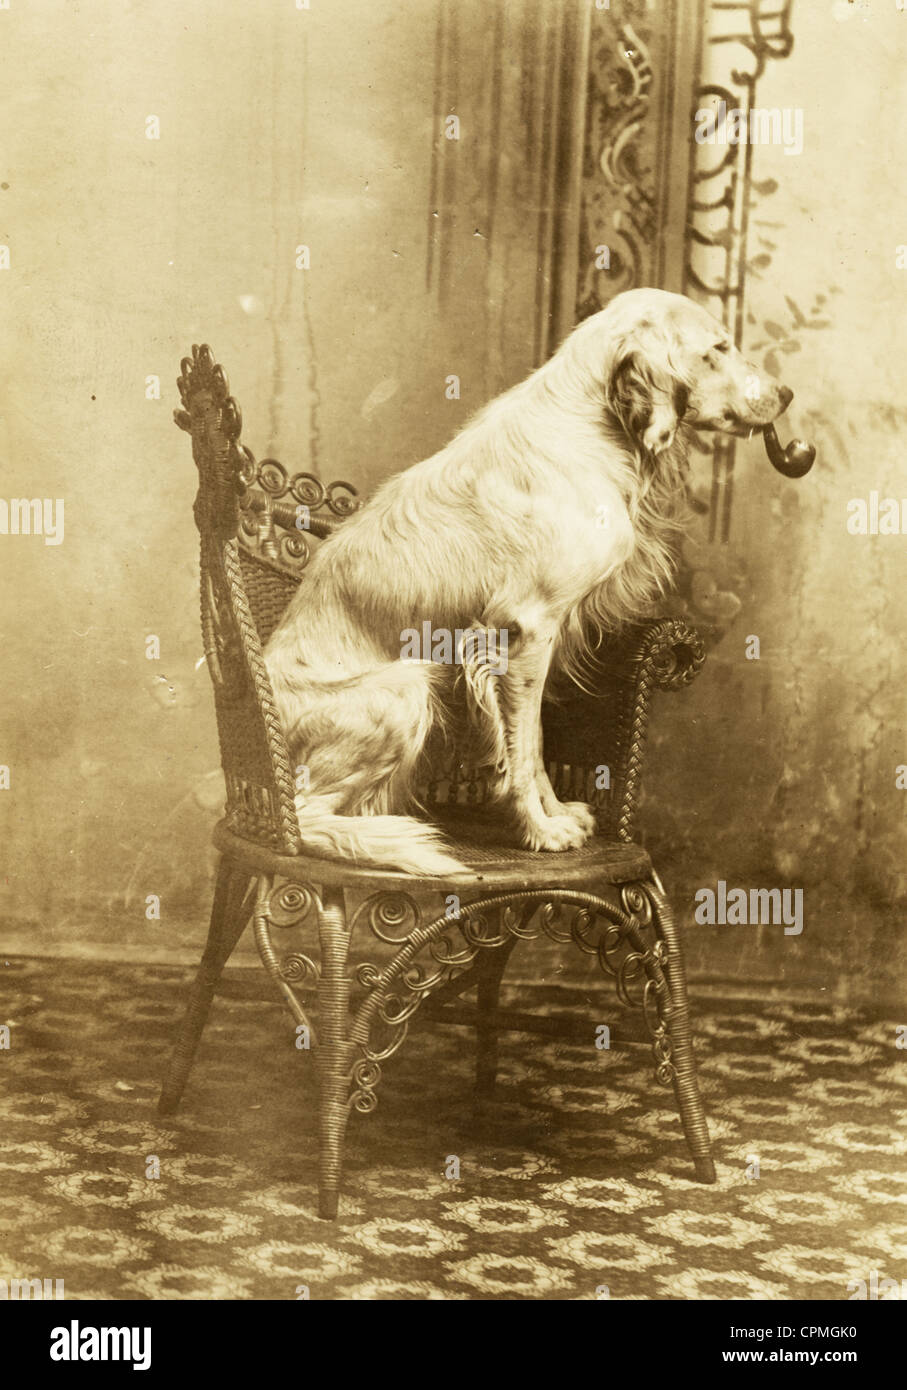 Profilbildnis des Hundes auf Korbstuhl raucht eine Pfeife Stockfoto